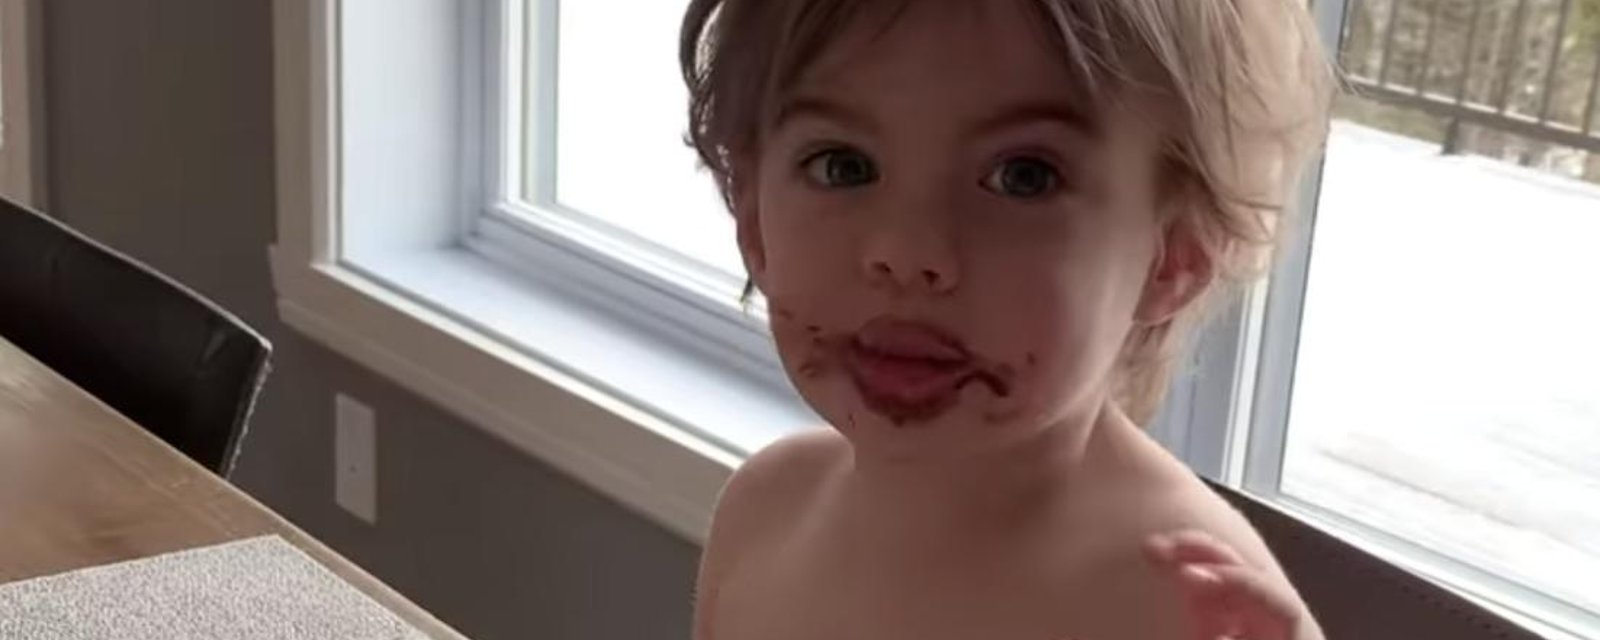 Le fils de Philippe Bond nous fait exploser de rire «Laisse-moi tranquille, je mange le chocolat de Stefano!»